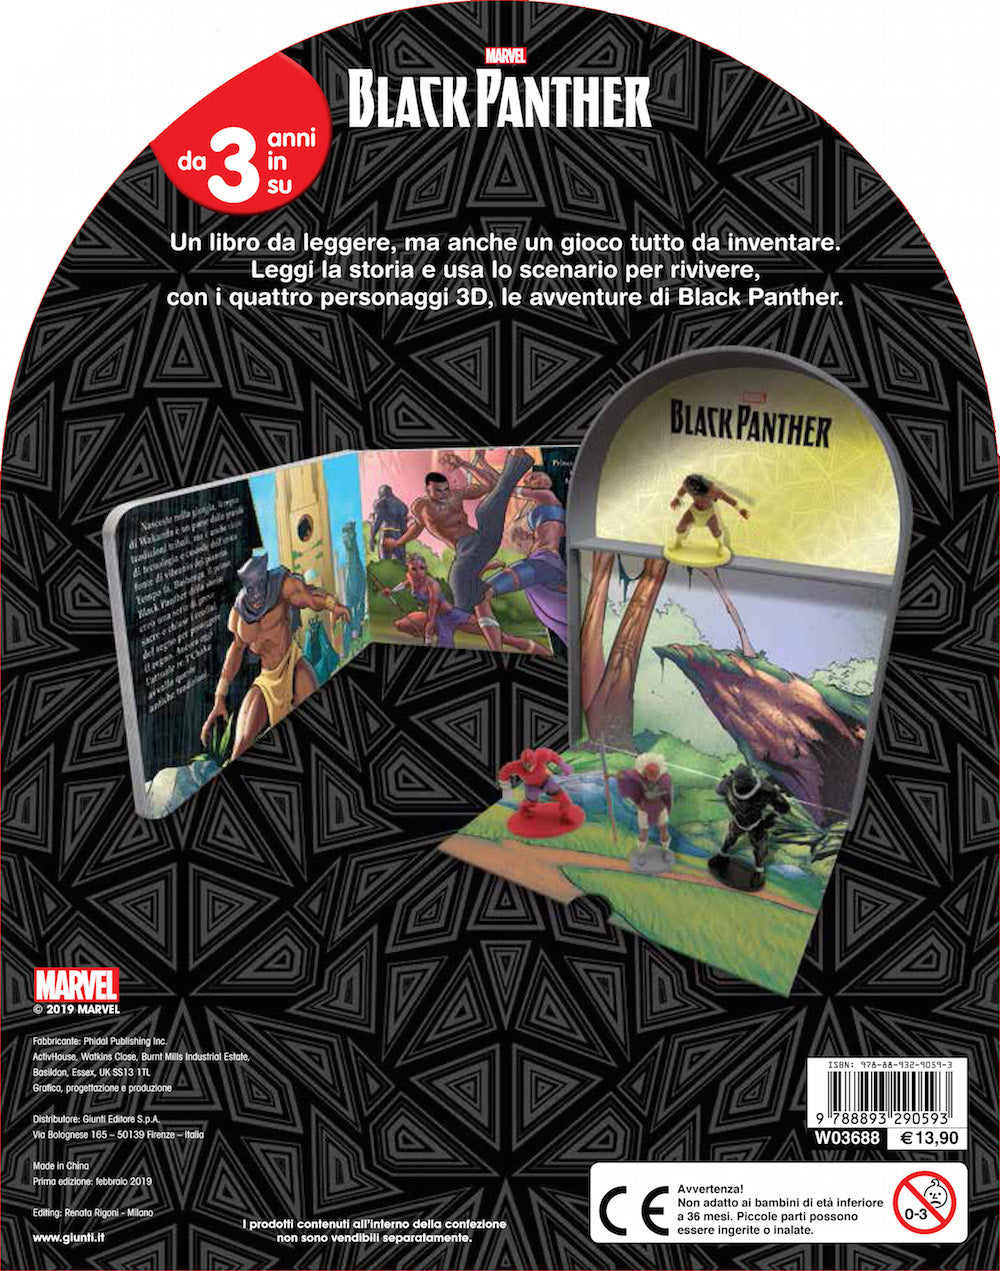 LibroGiocaKit - Marvel. Black Panther. Con 4 personaggi 3D e 1 scenario per giocare!